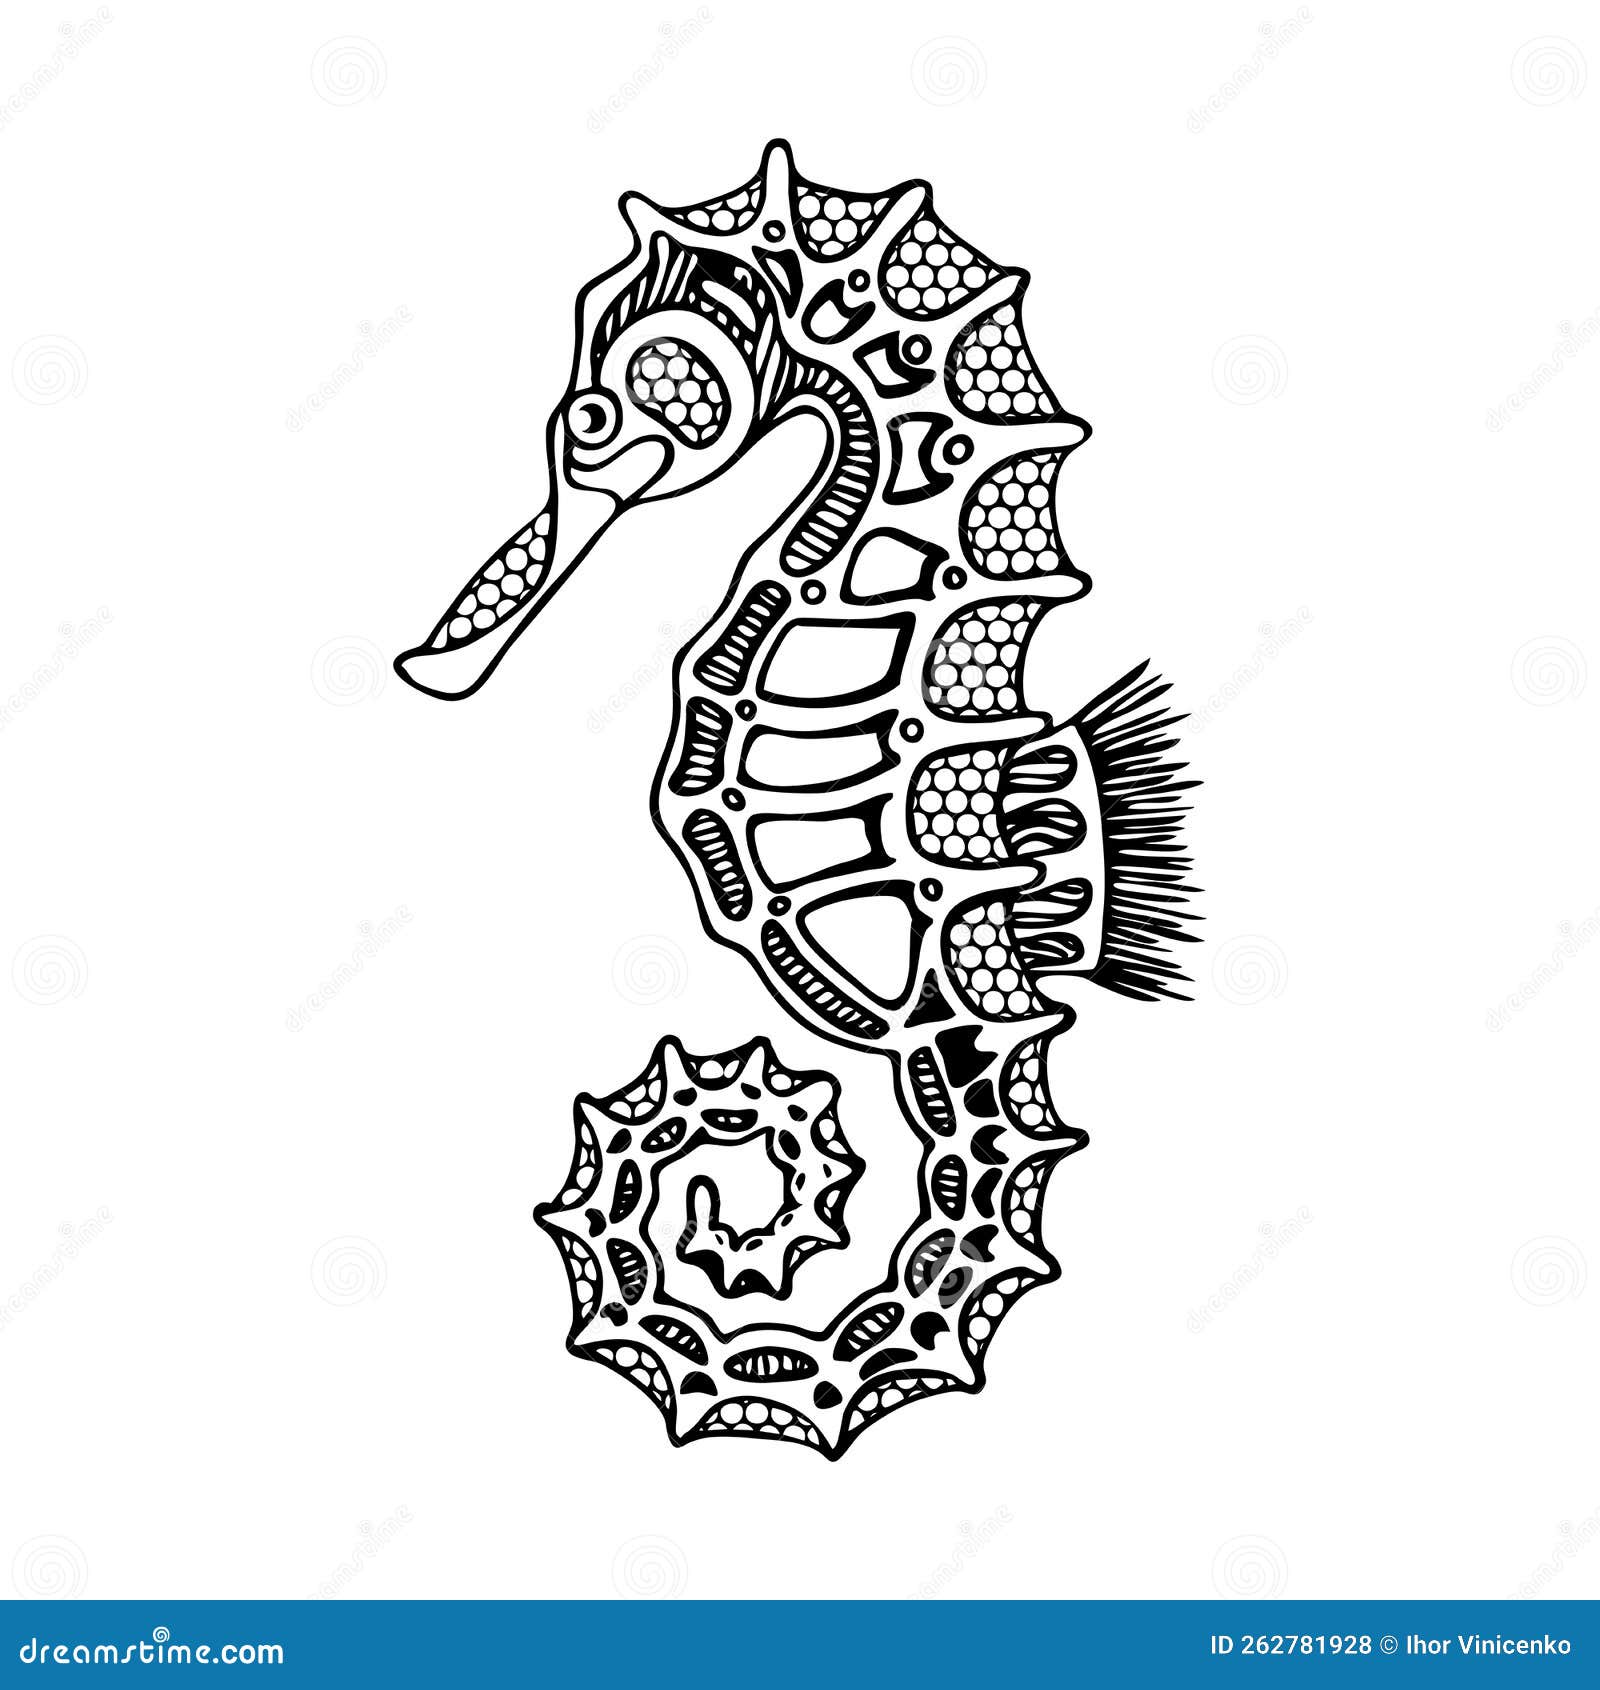 Etcetera - Cavalo marinho Desenho em pontilhismo feito com caneta